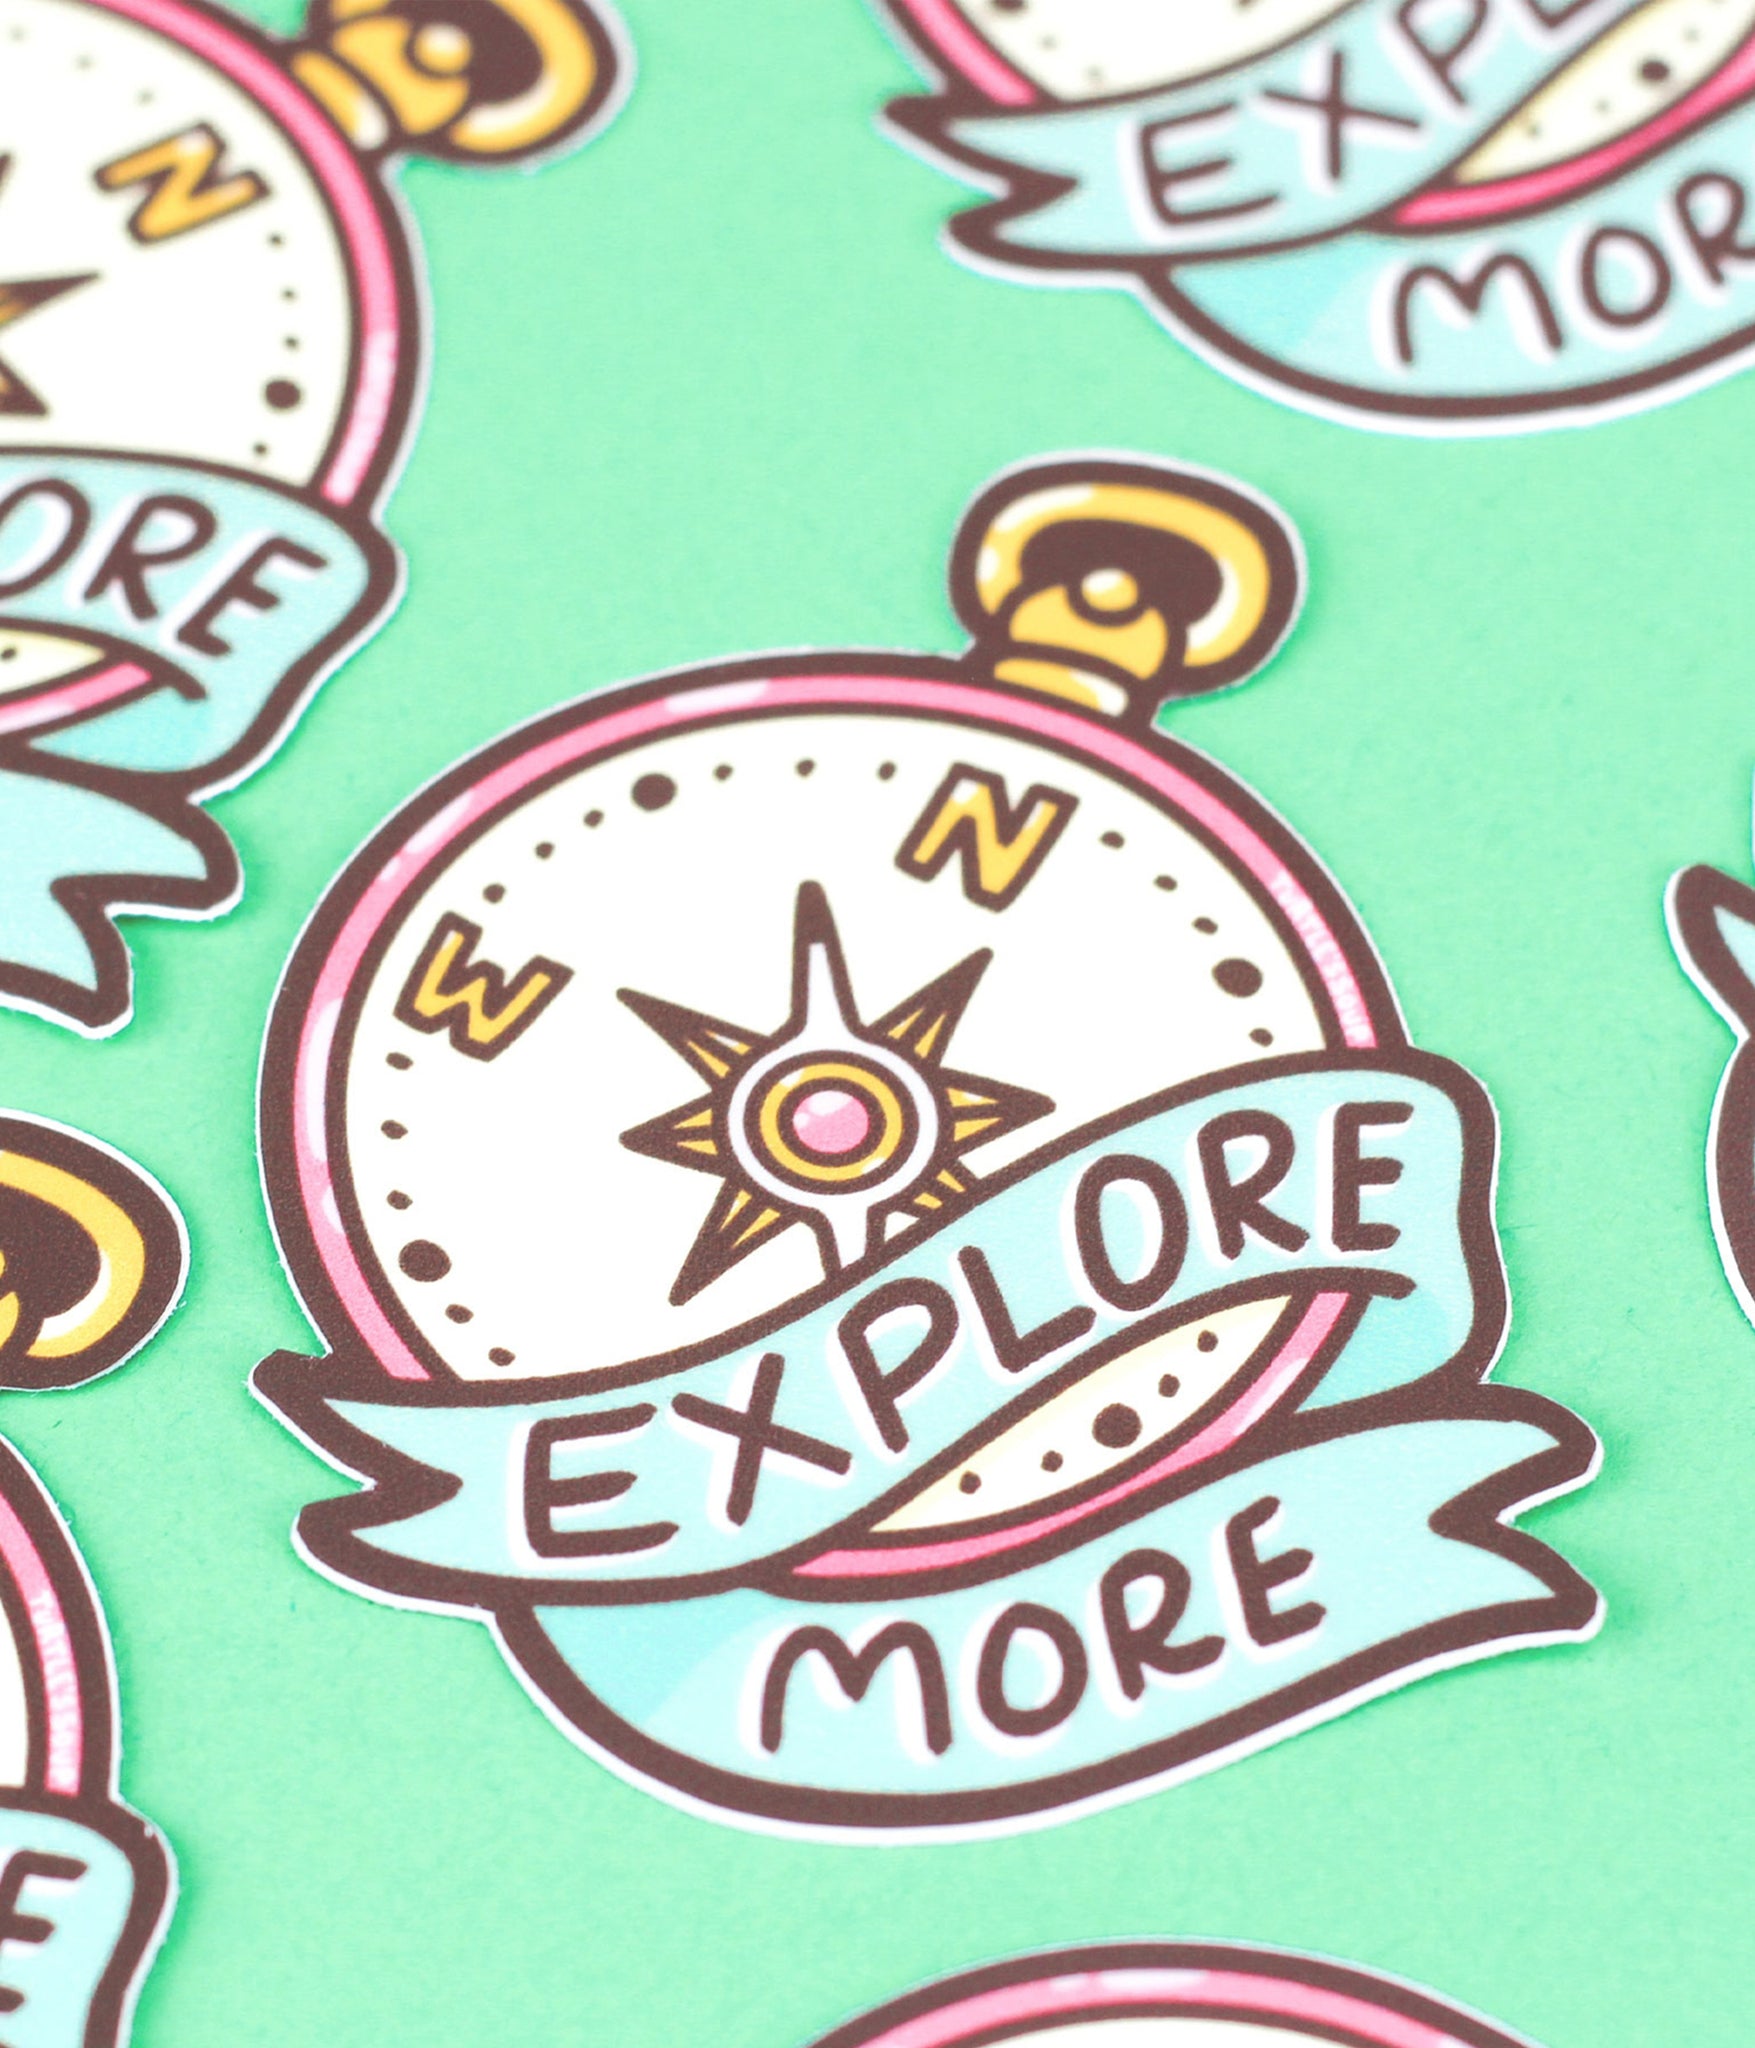 Explore more sticker